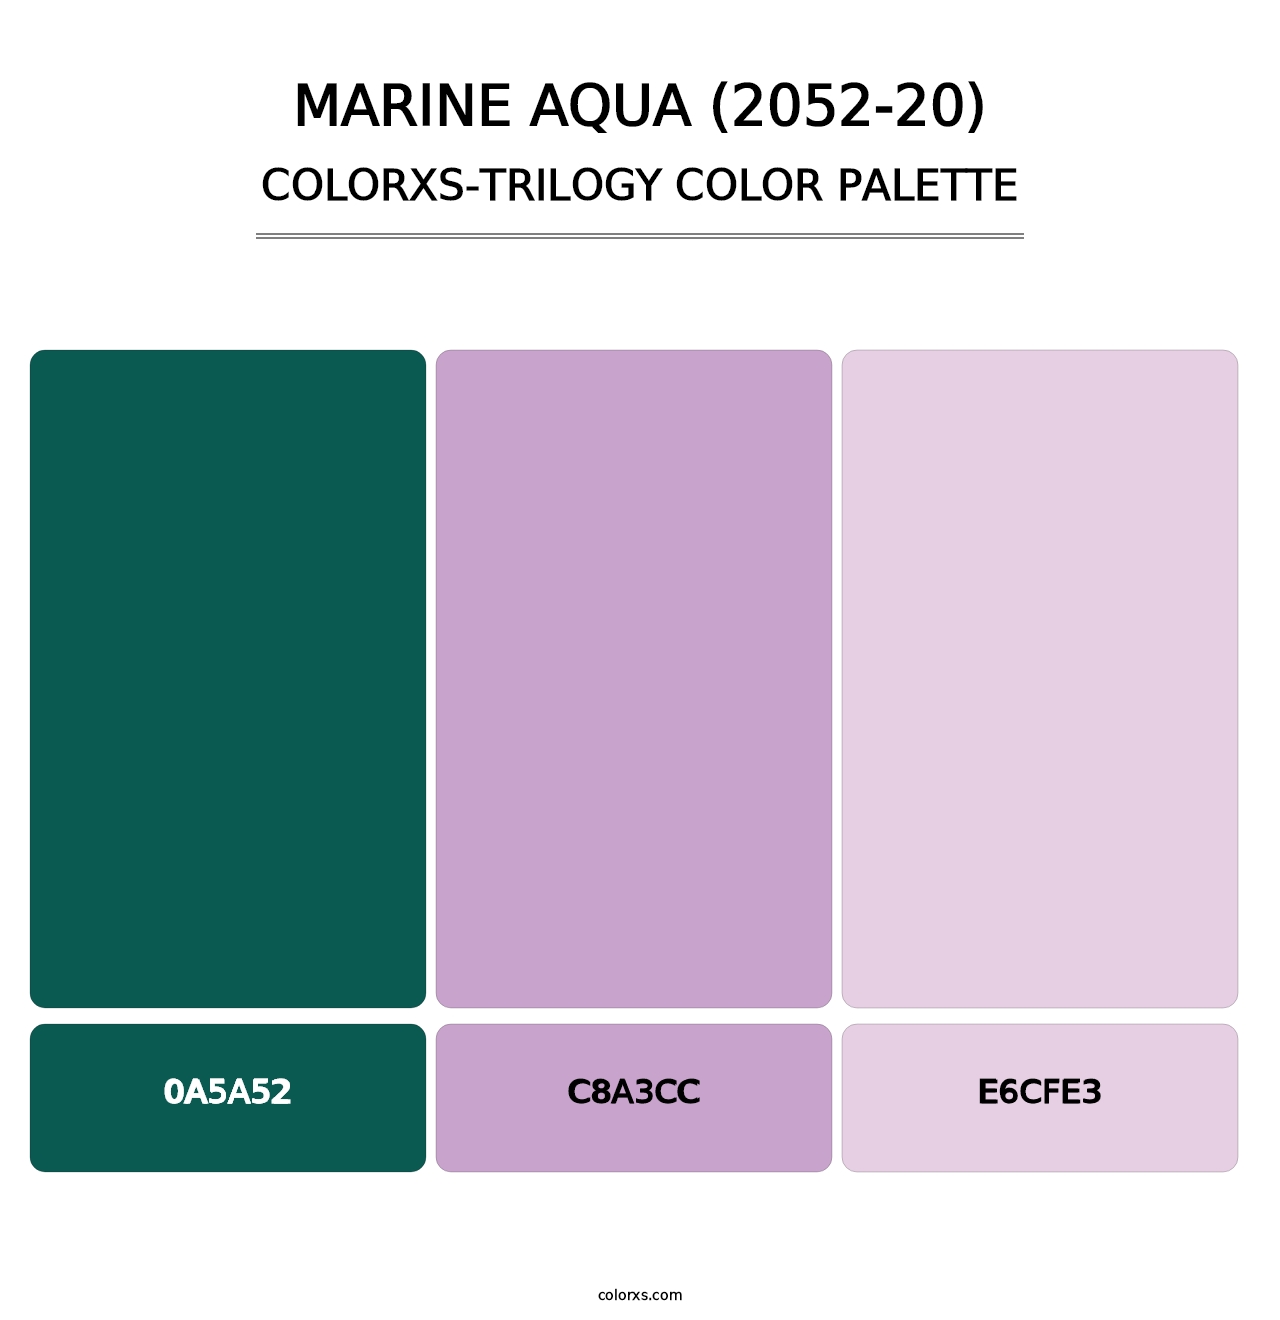 Marine Aqua (2052-20) - Colorxs Trilogy Palette